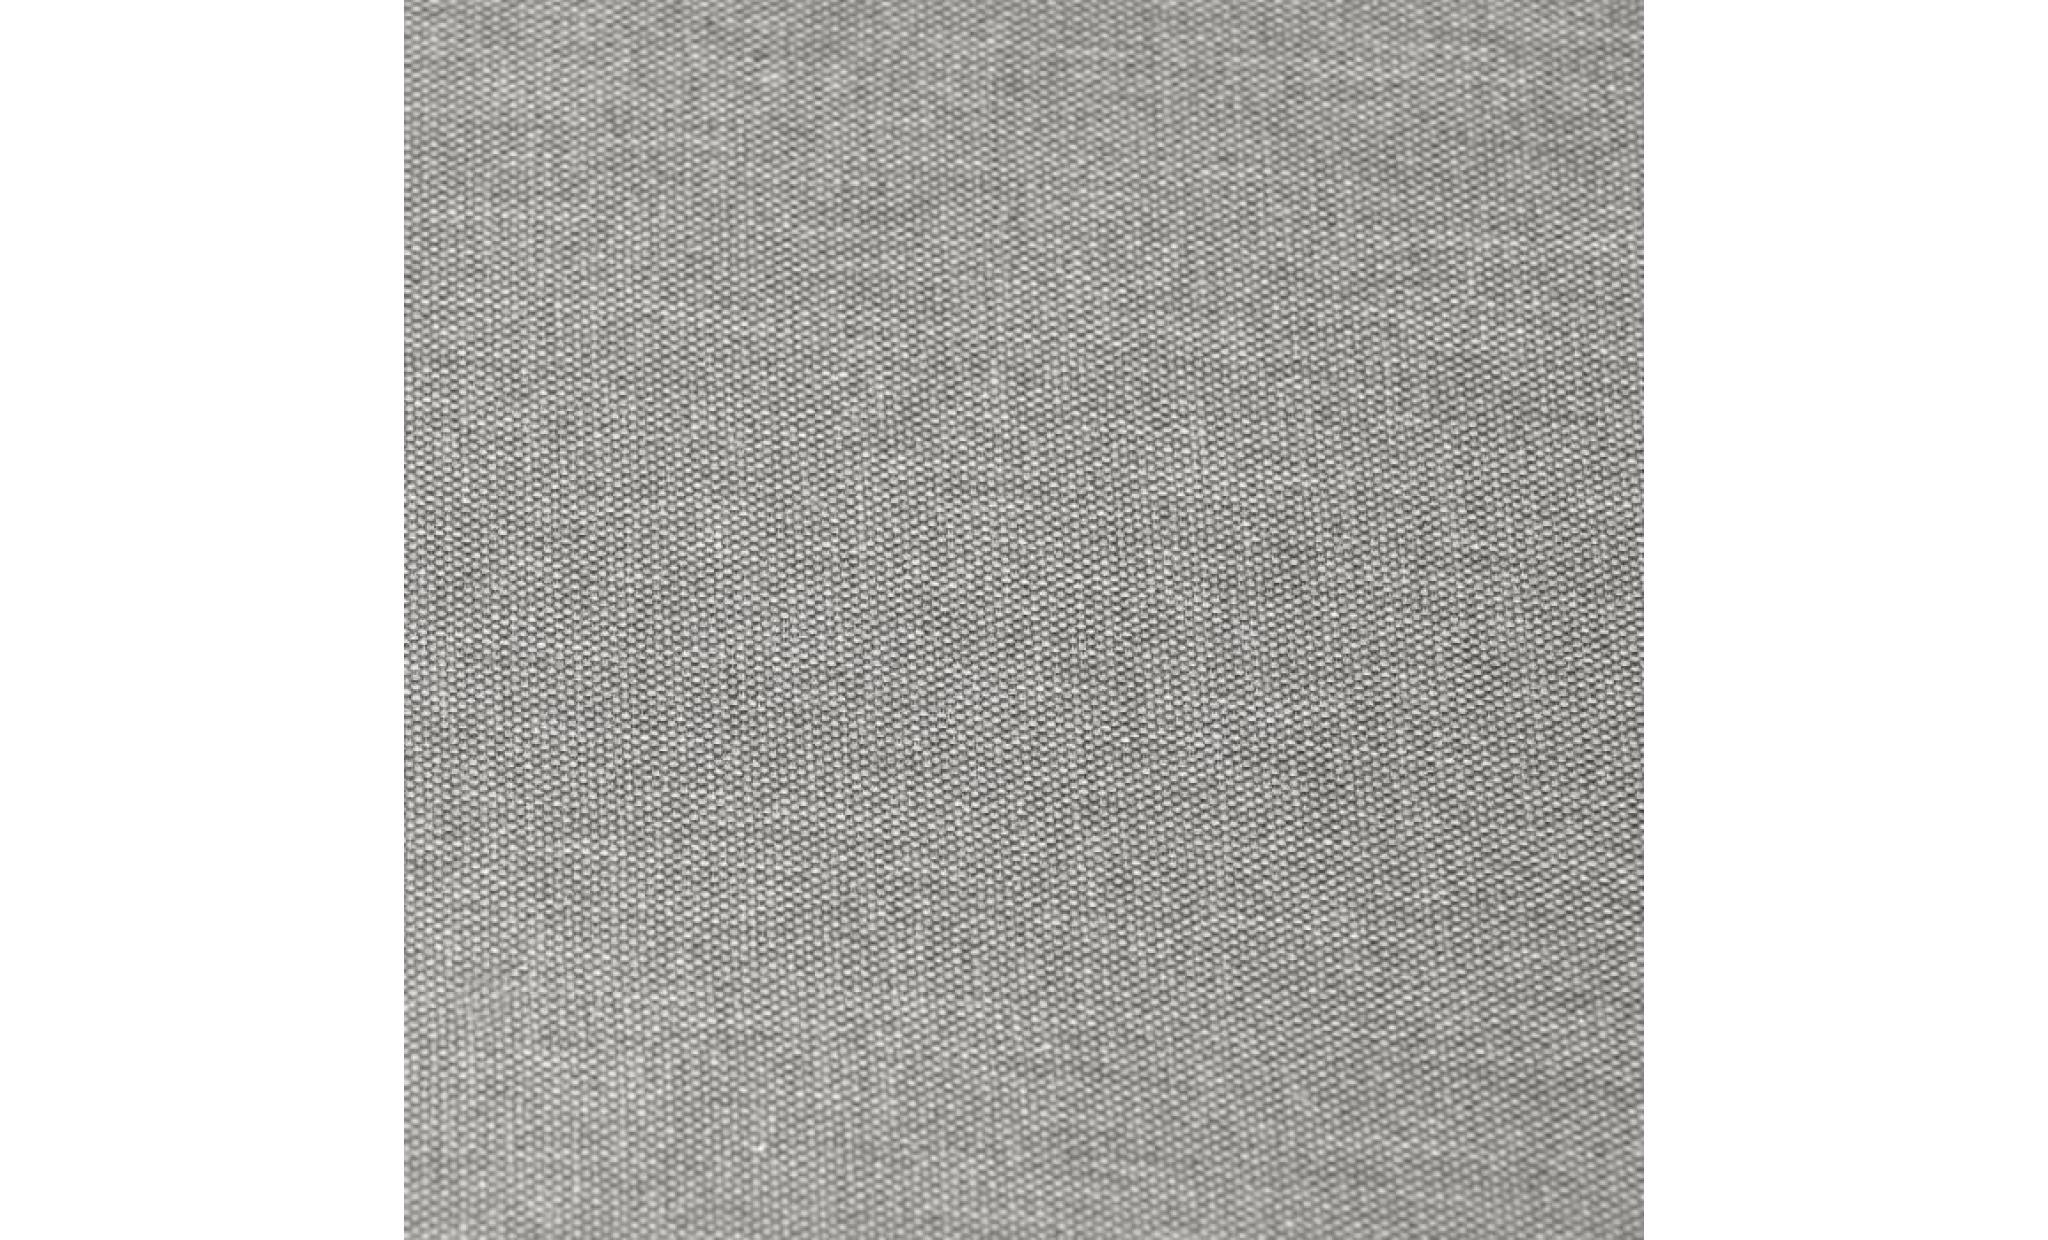 ibra canapé angle réversible 3/4 places   tissu taupe   scandinave   l 203 x p 88 130 cm pas cher